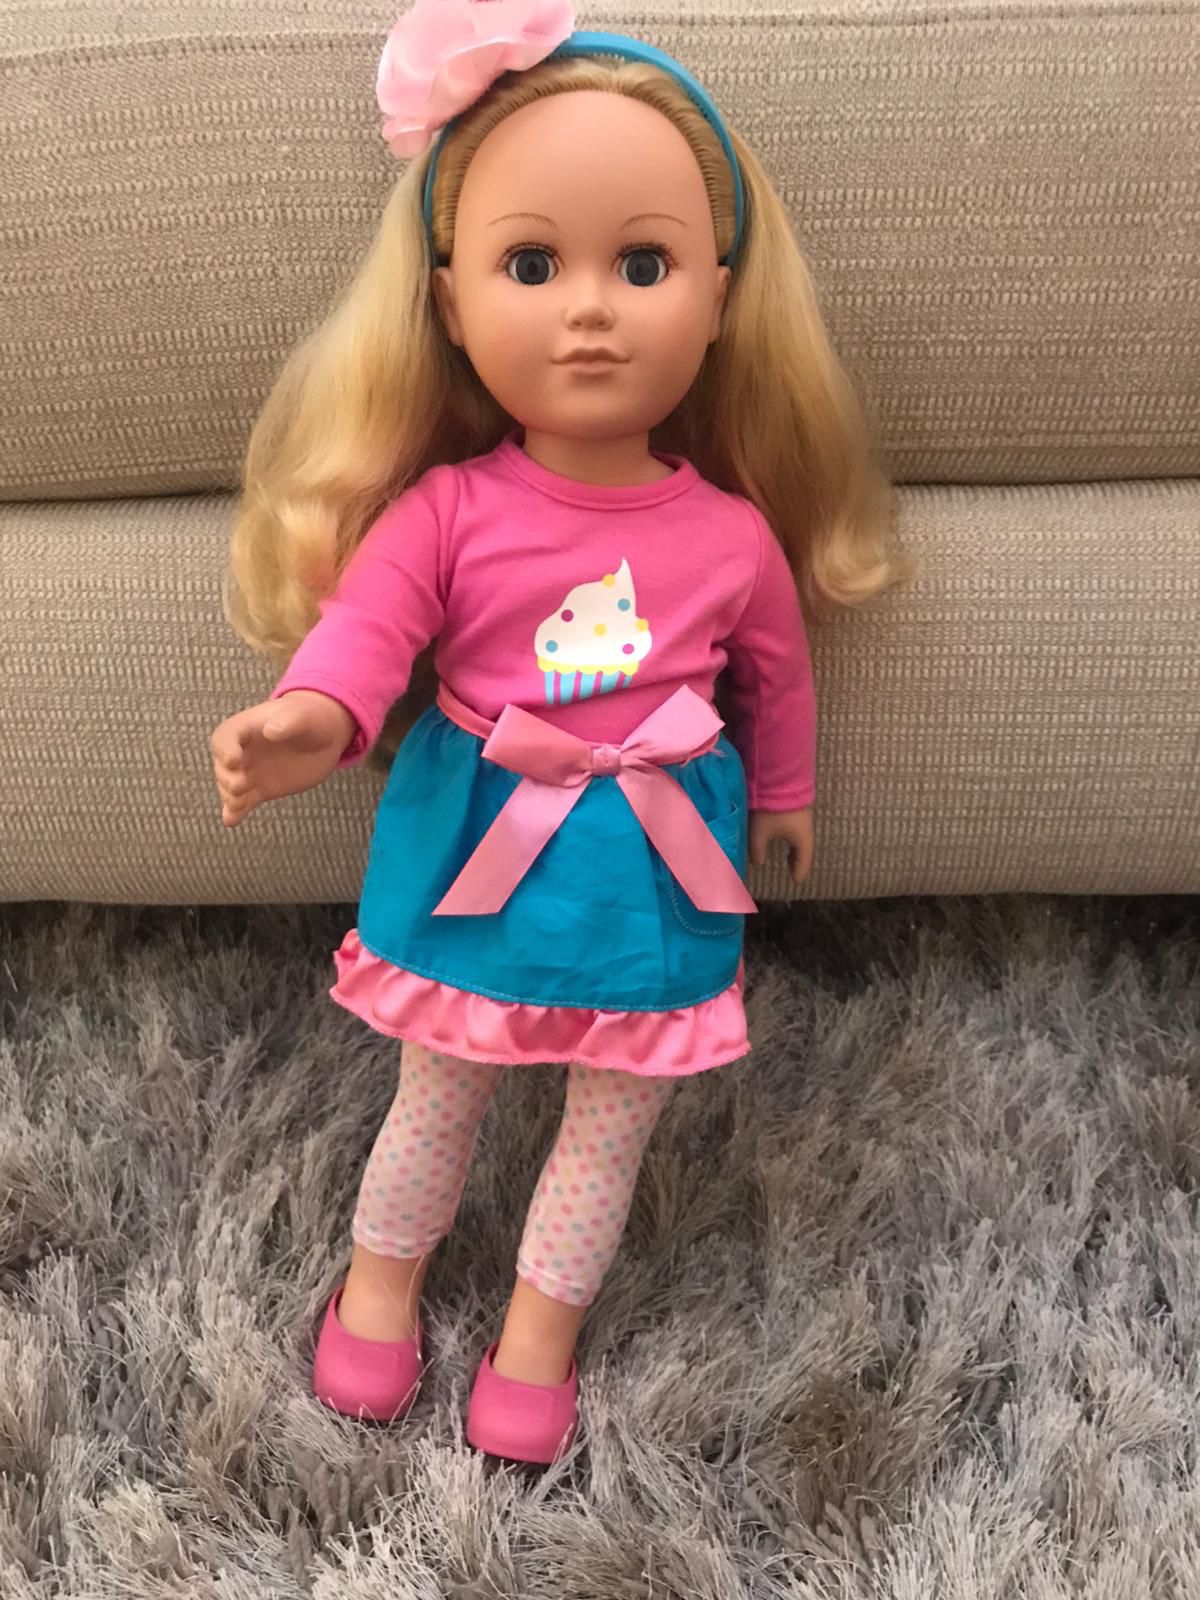 Doll for girl toys gift muñecas para niñas juguetes regalos